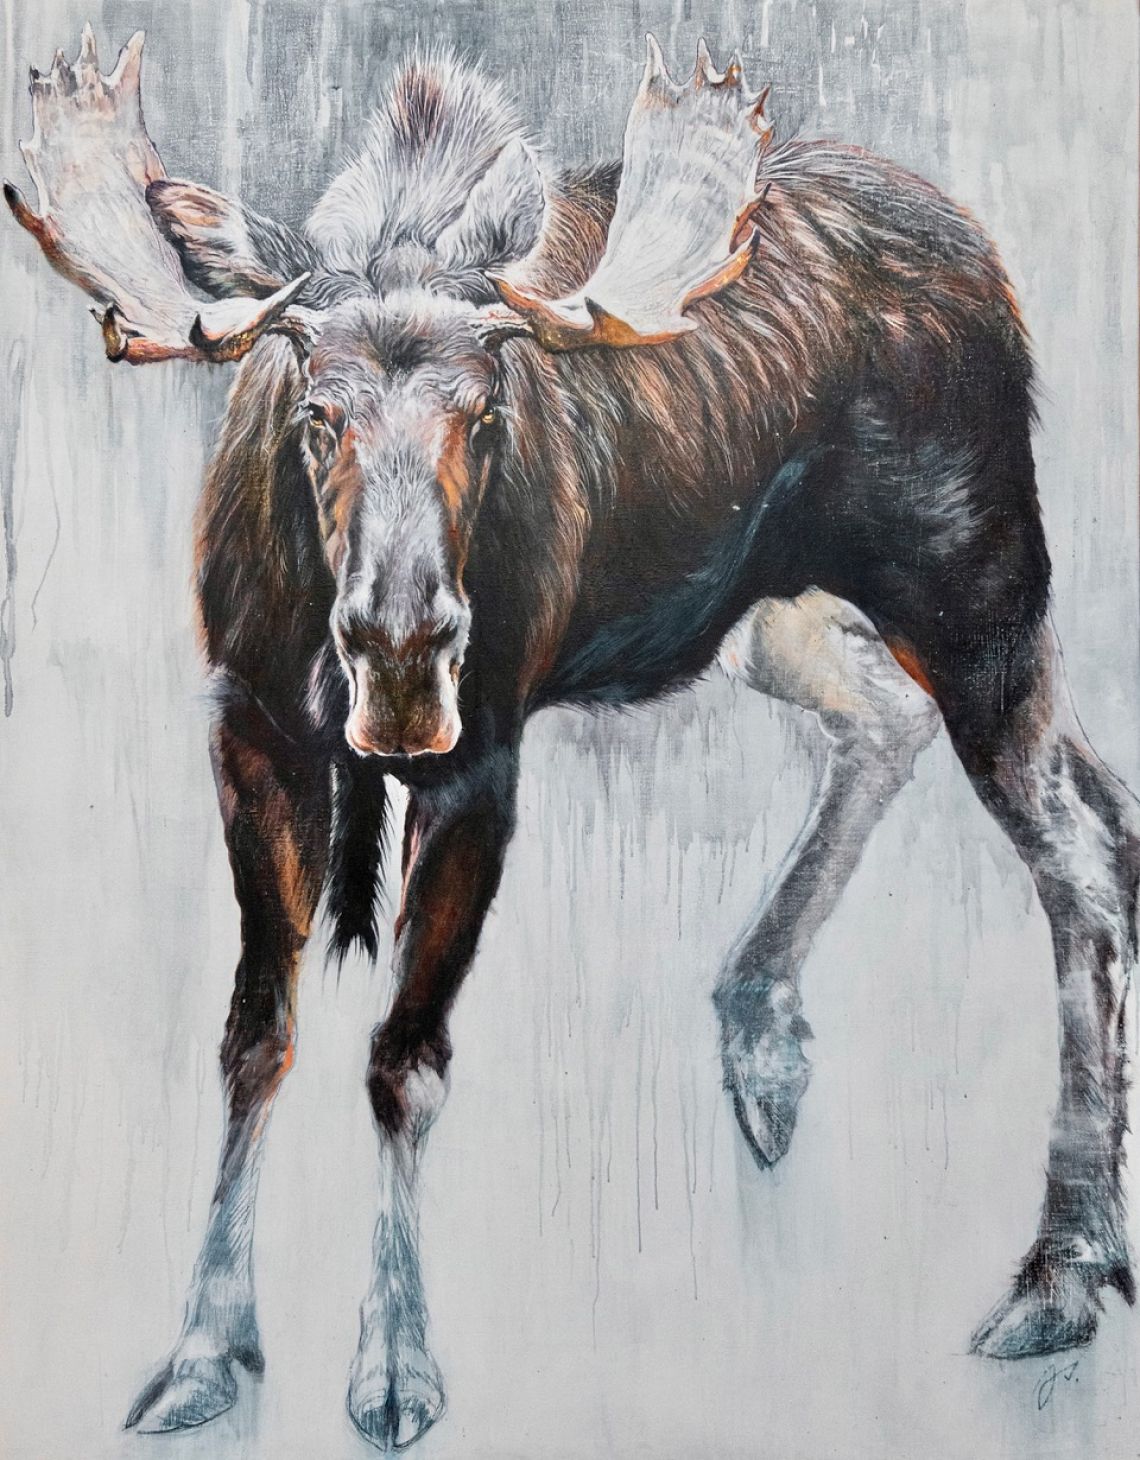 Big bull moose